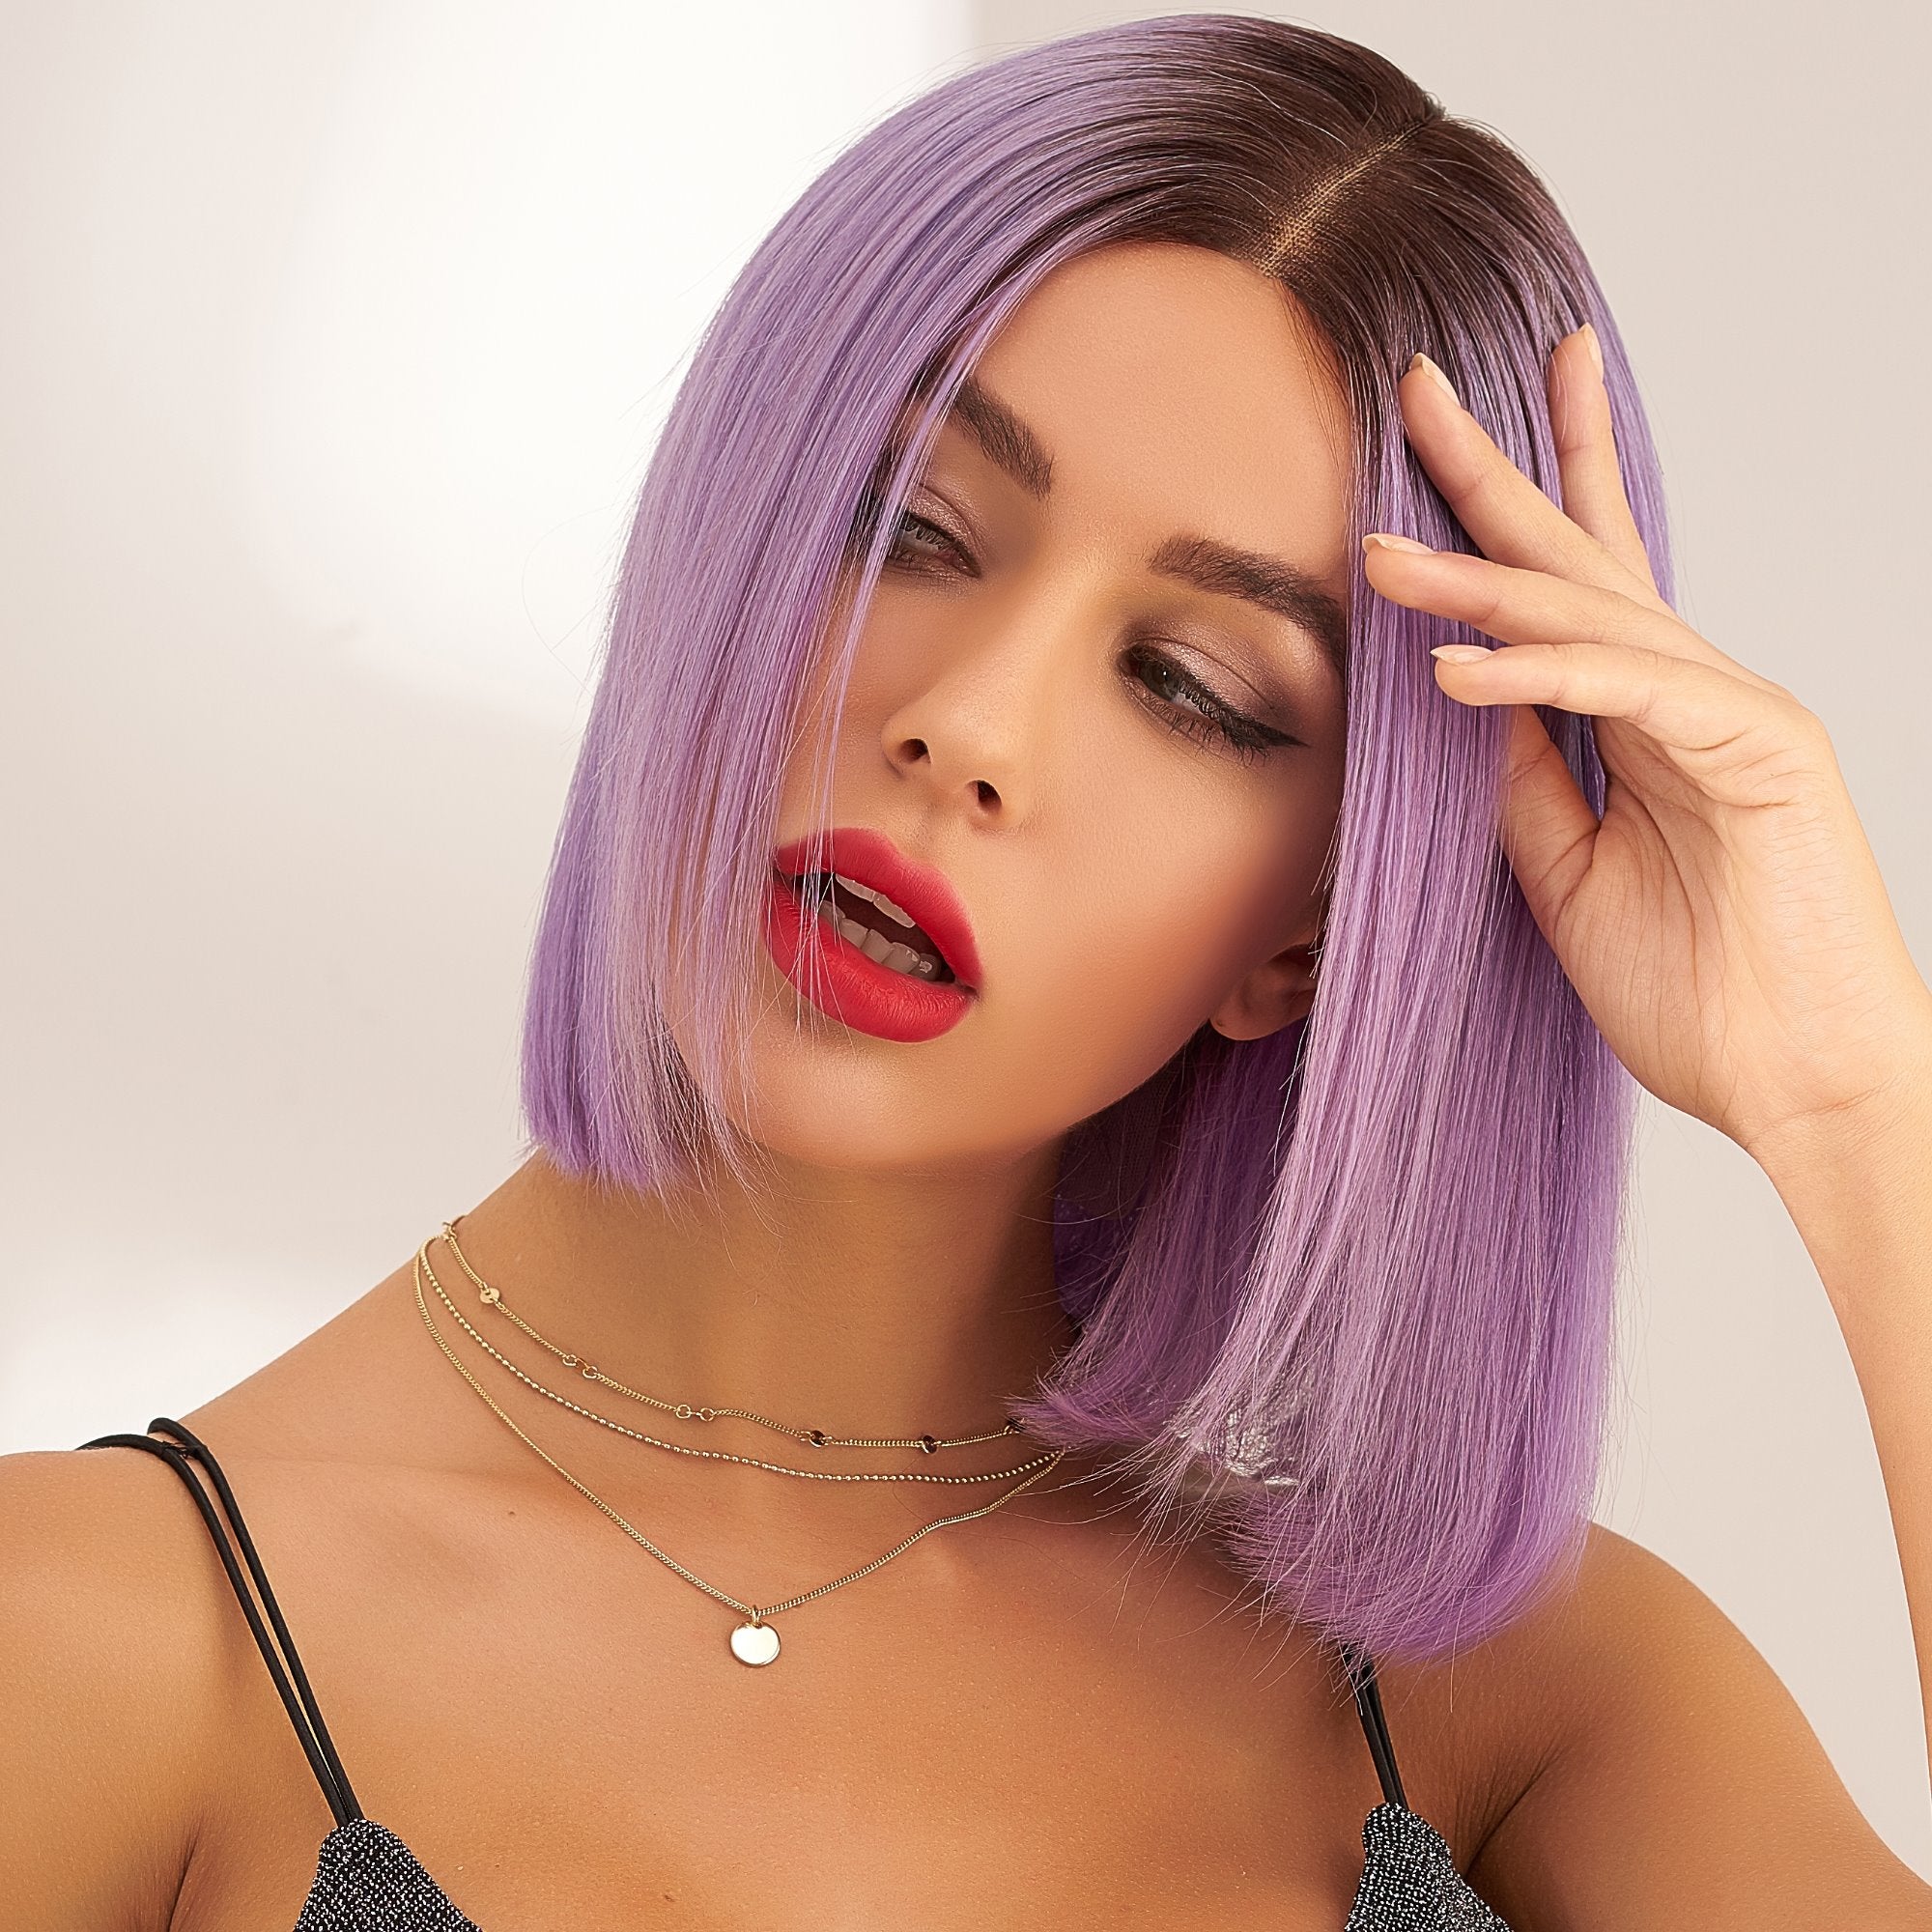 perruque violette